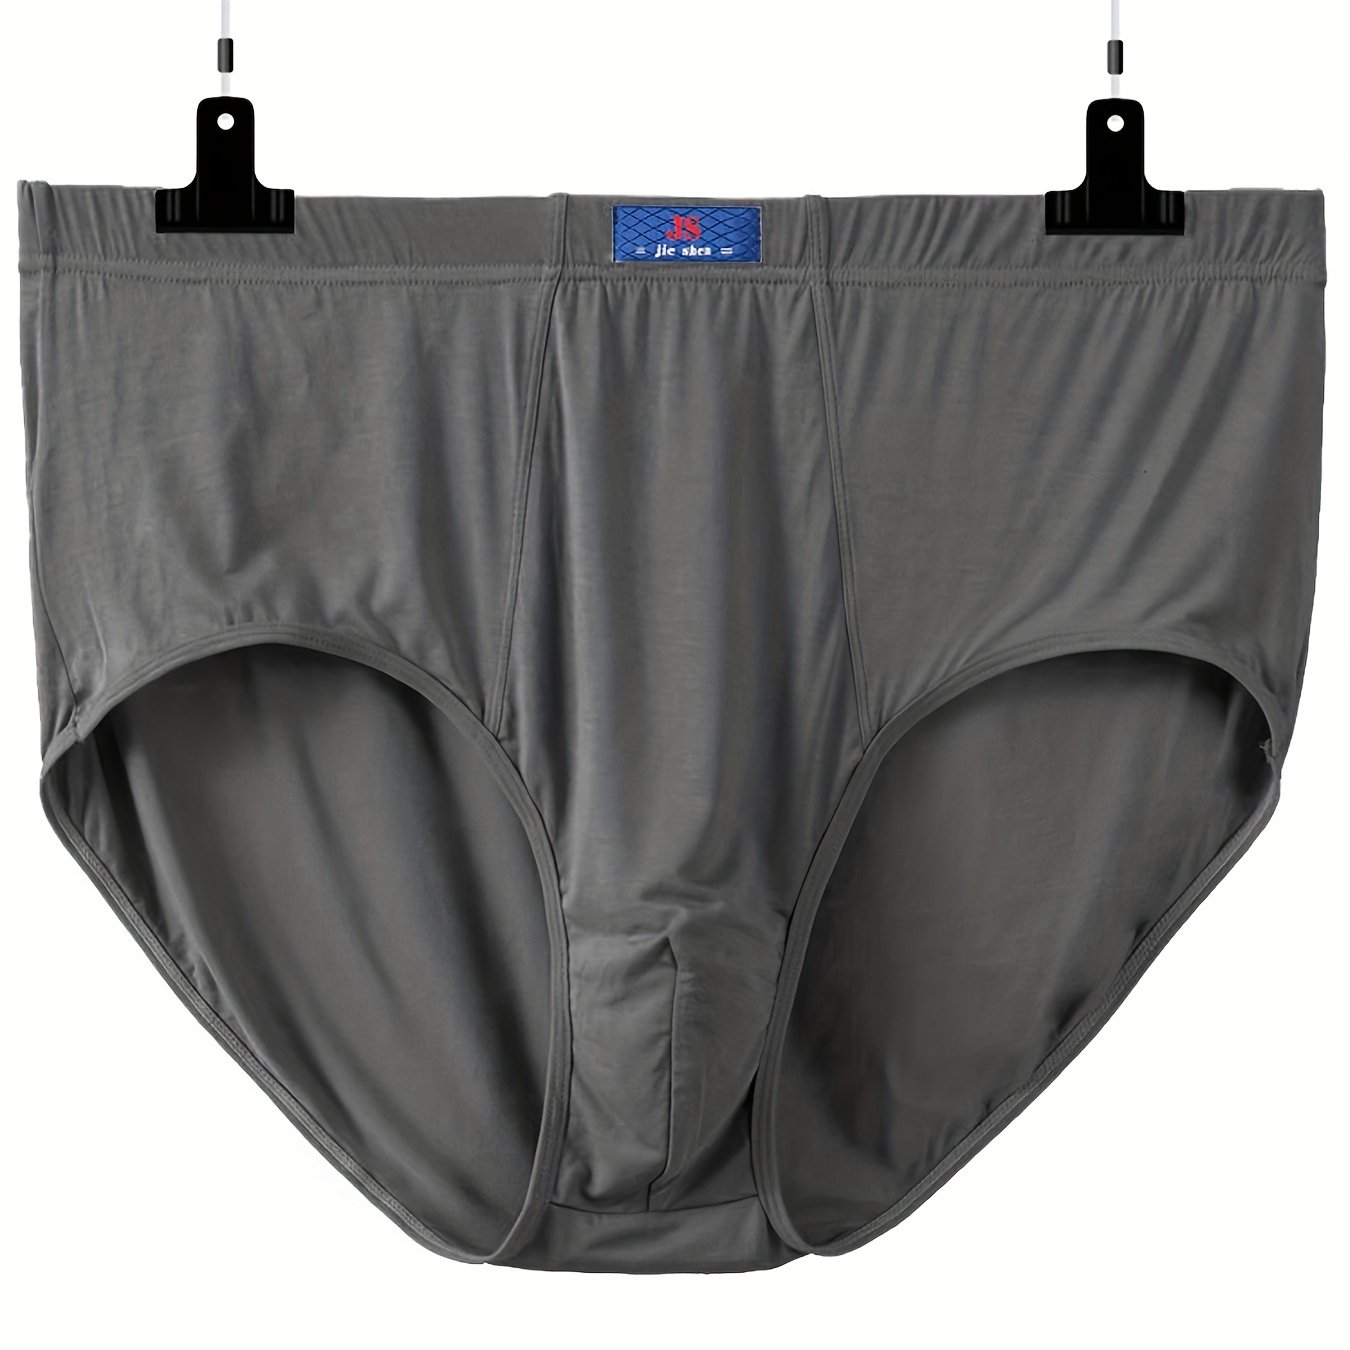 Tris elastic cotton underwear briefs plus size for men. article 944